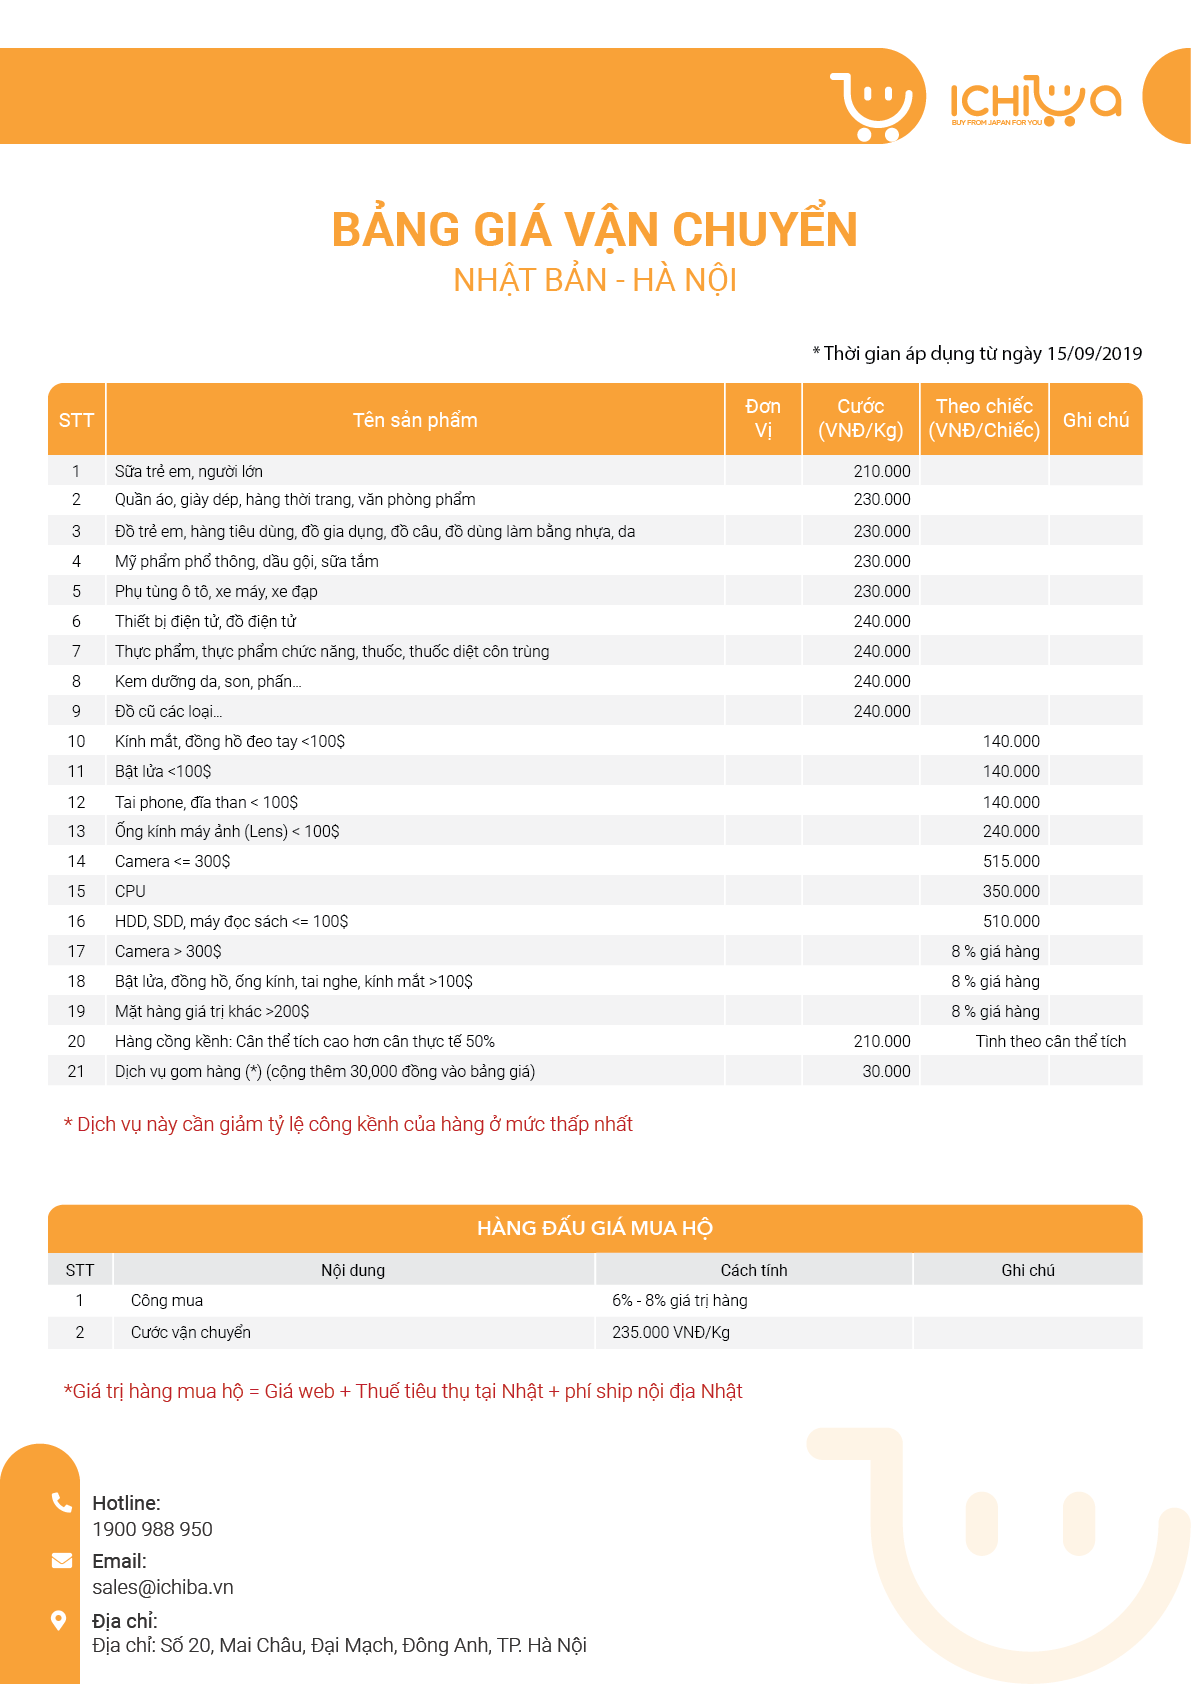 Bảng giá vận chuyển Nhật Việt